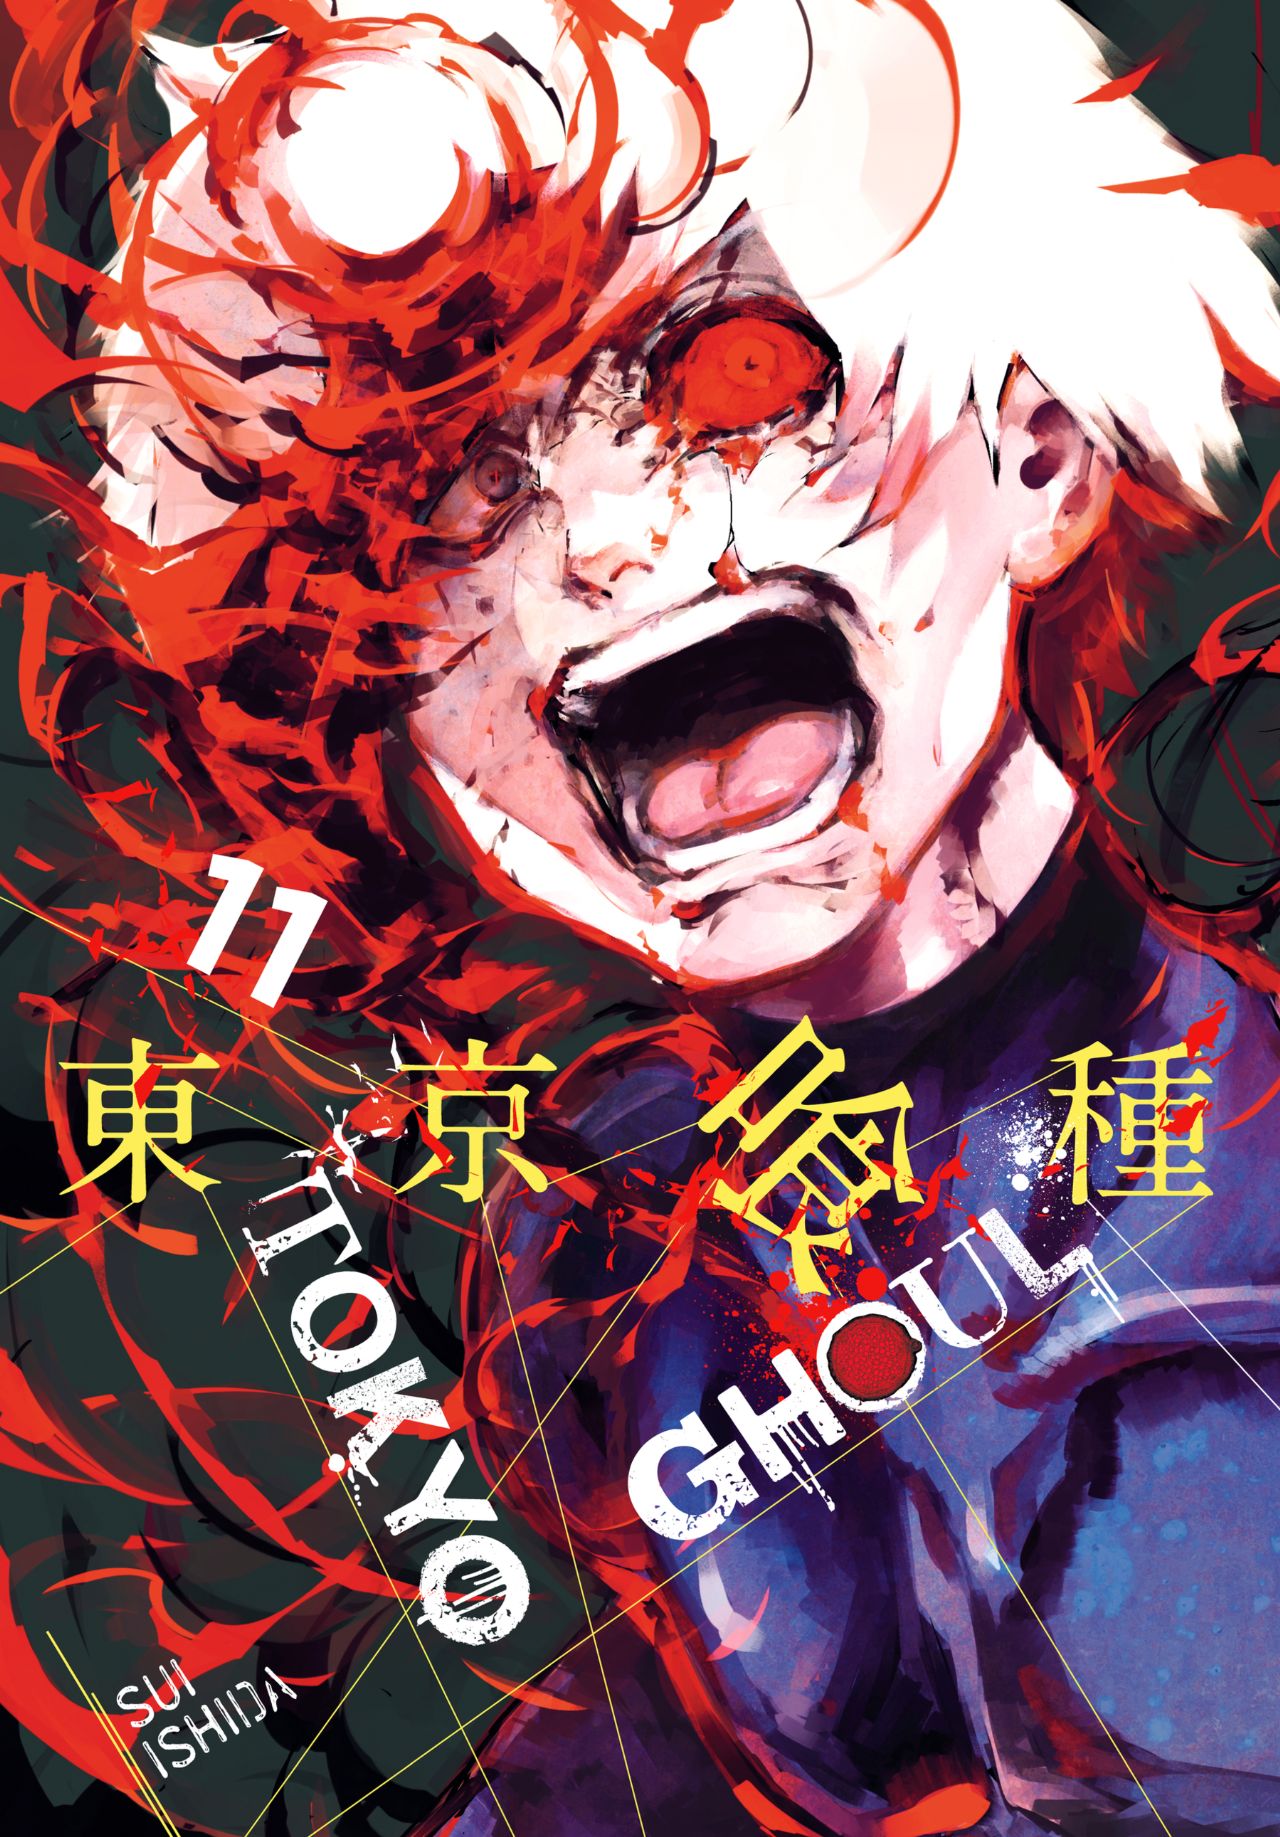 Tokyo Ghoul Vol. 11 Review